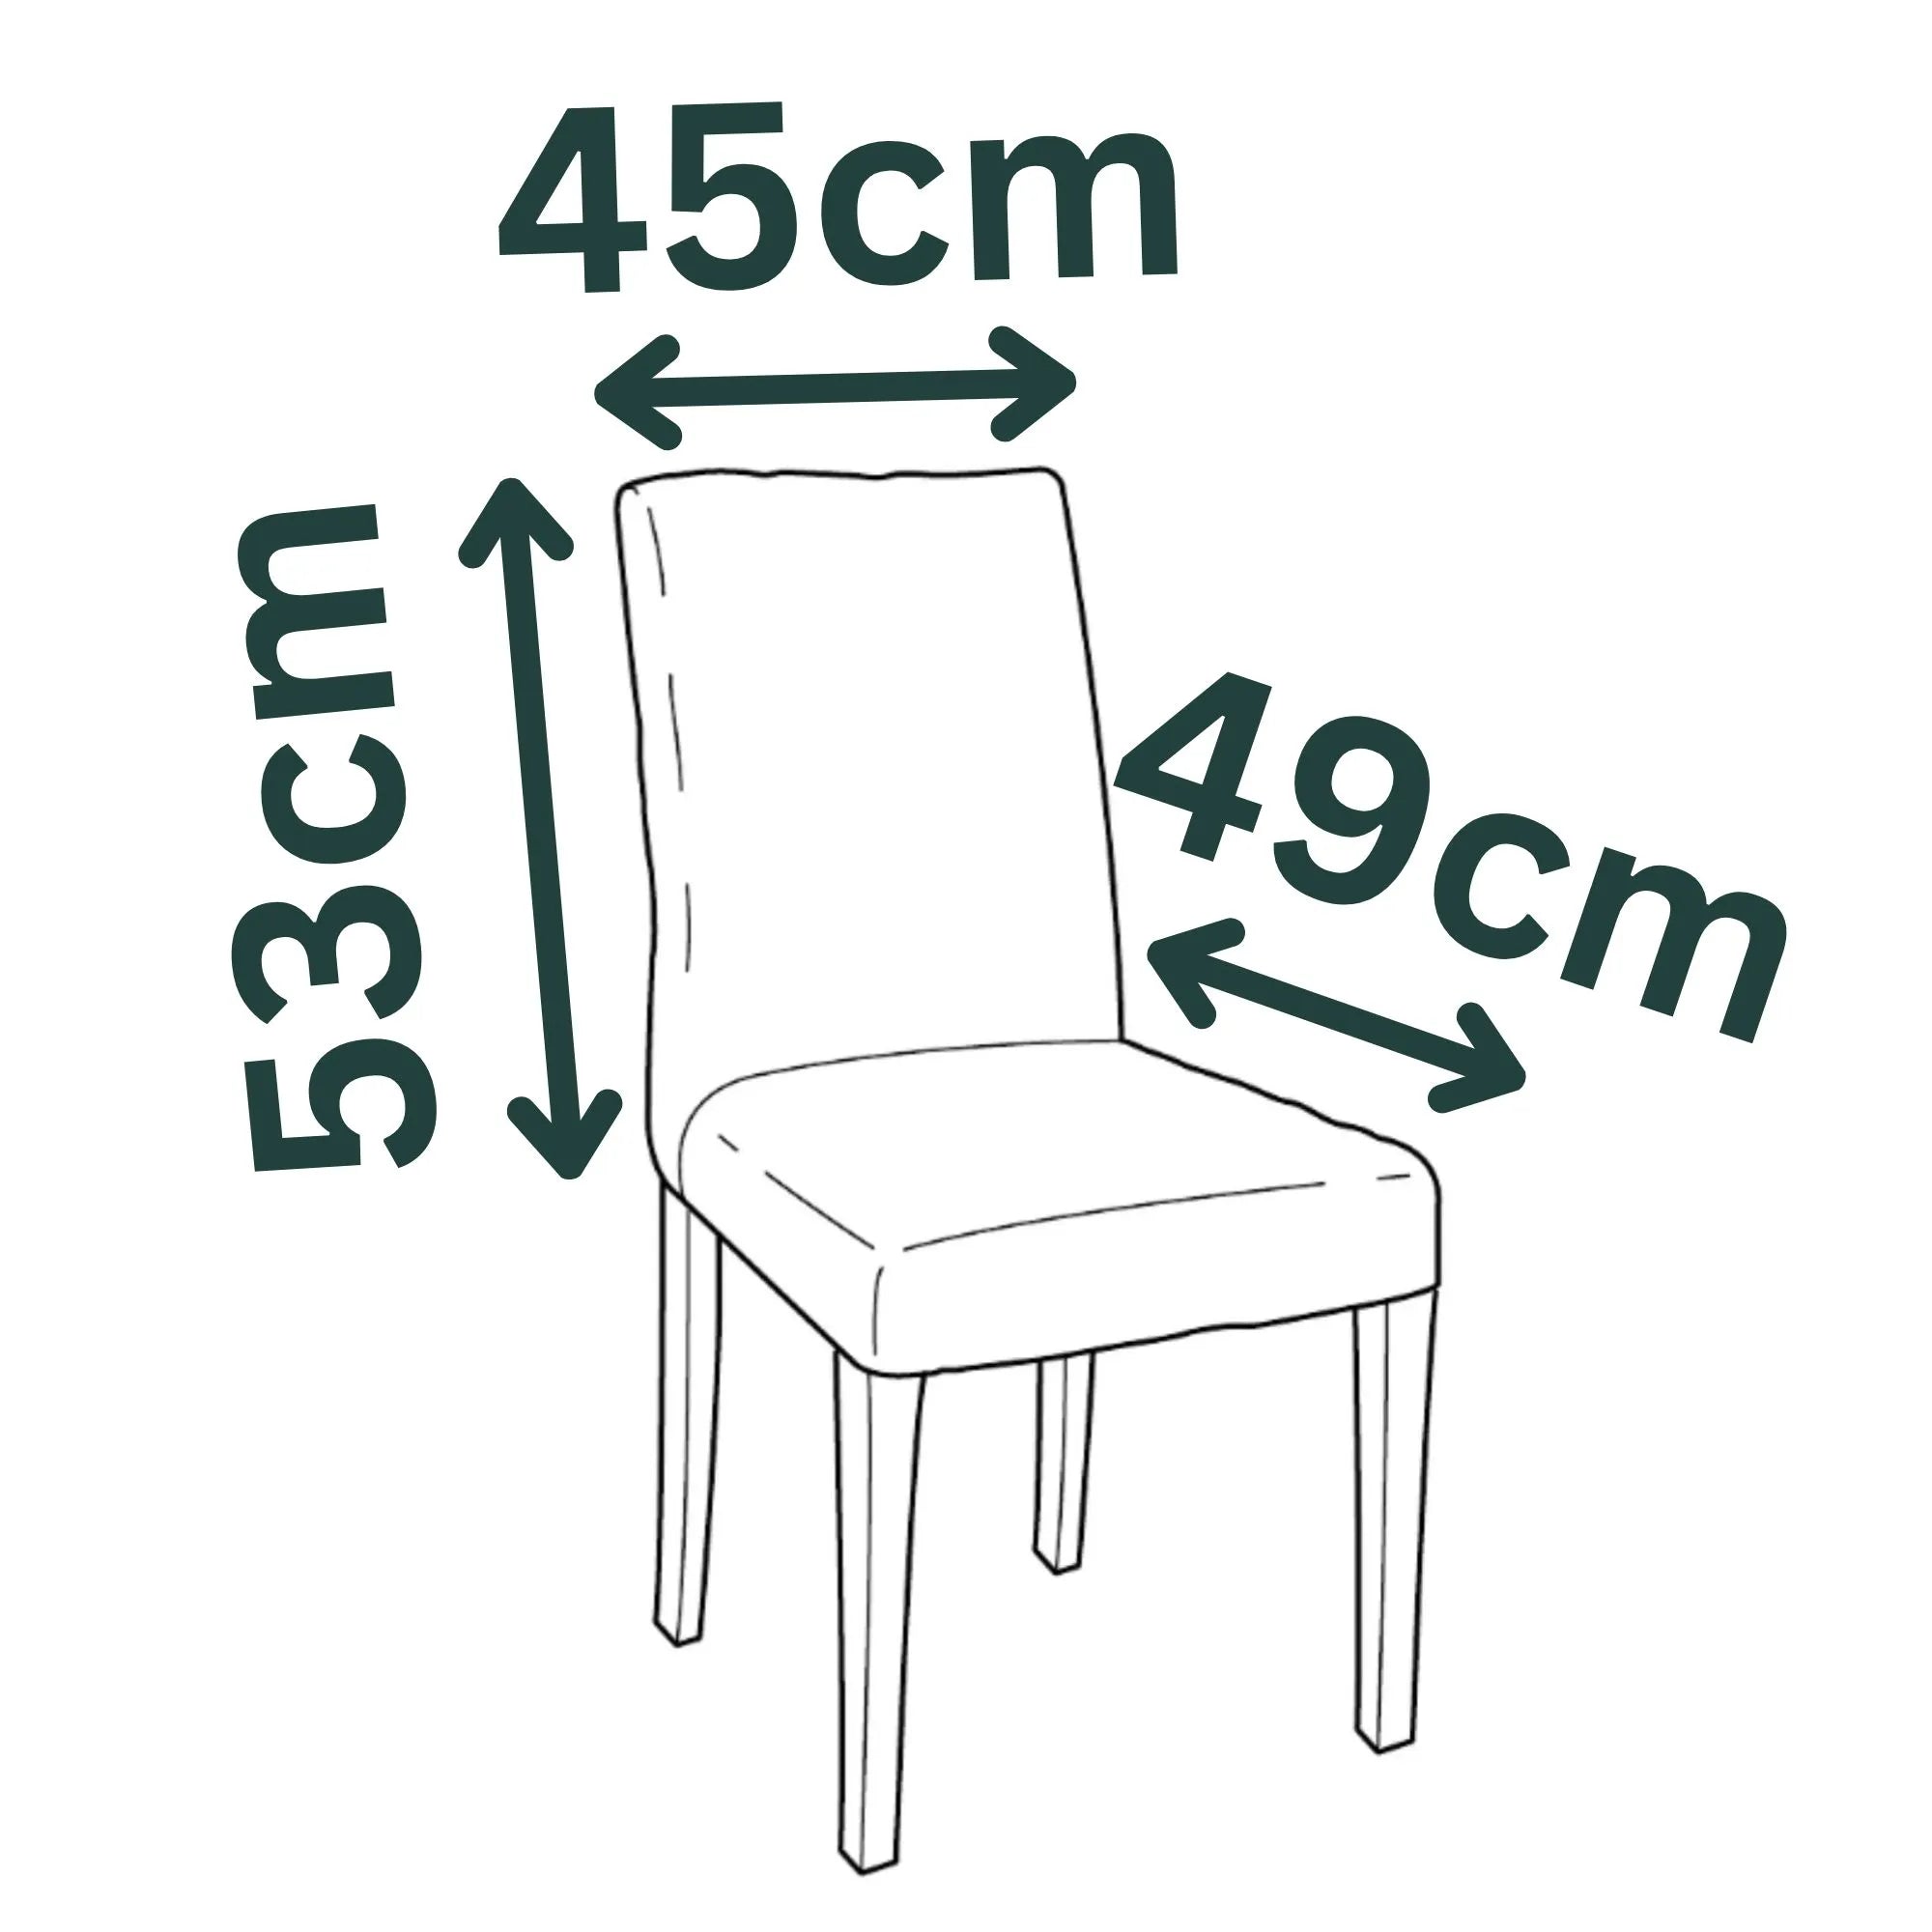 HENRIKSDAL IKEA Chair Medium Skirt Cover - Larger Size Model